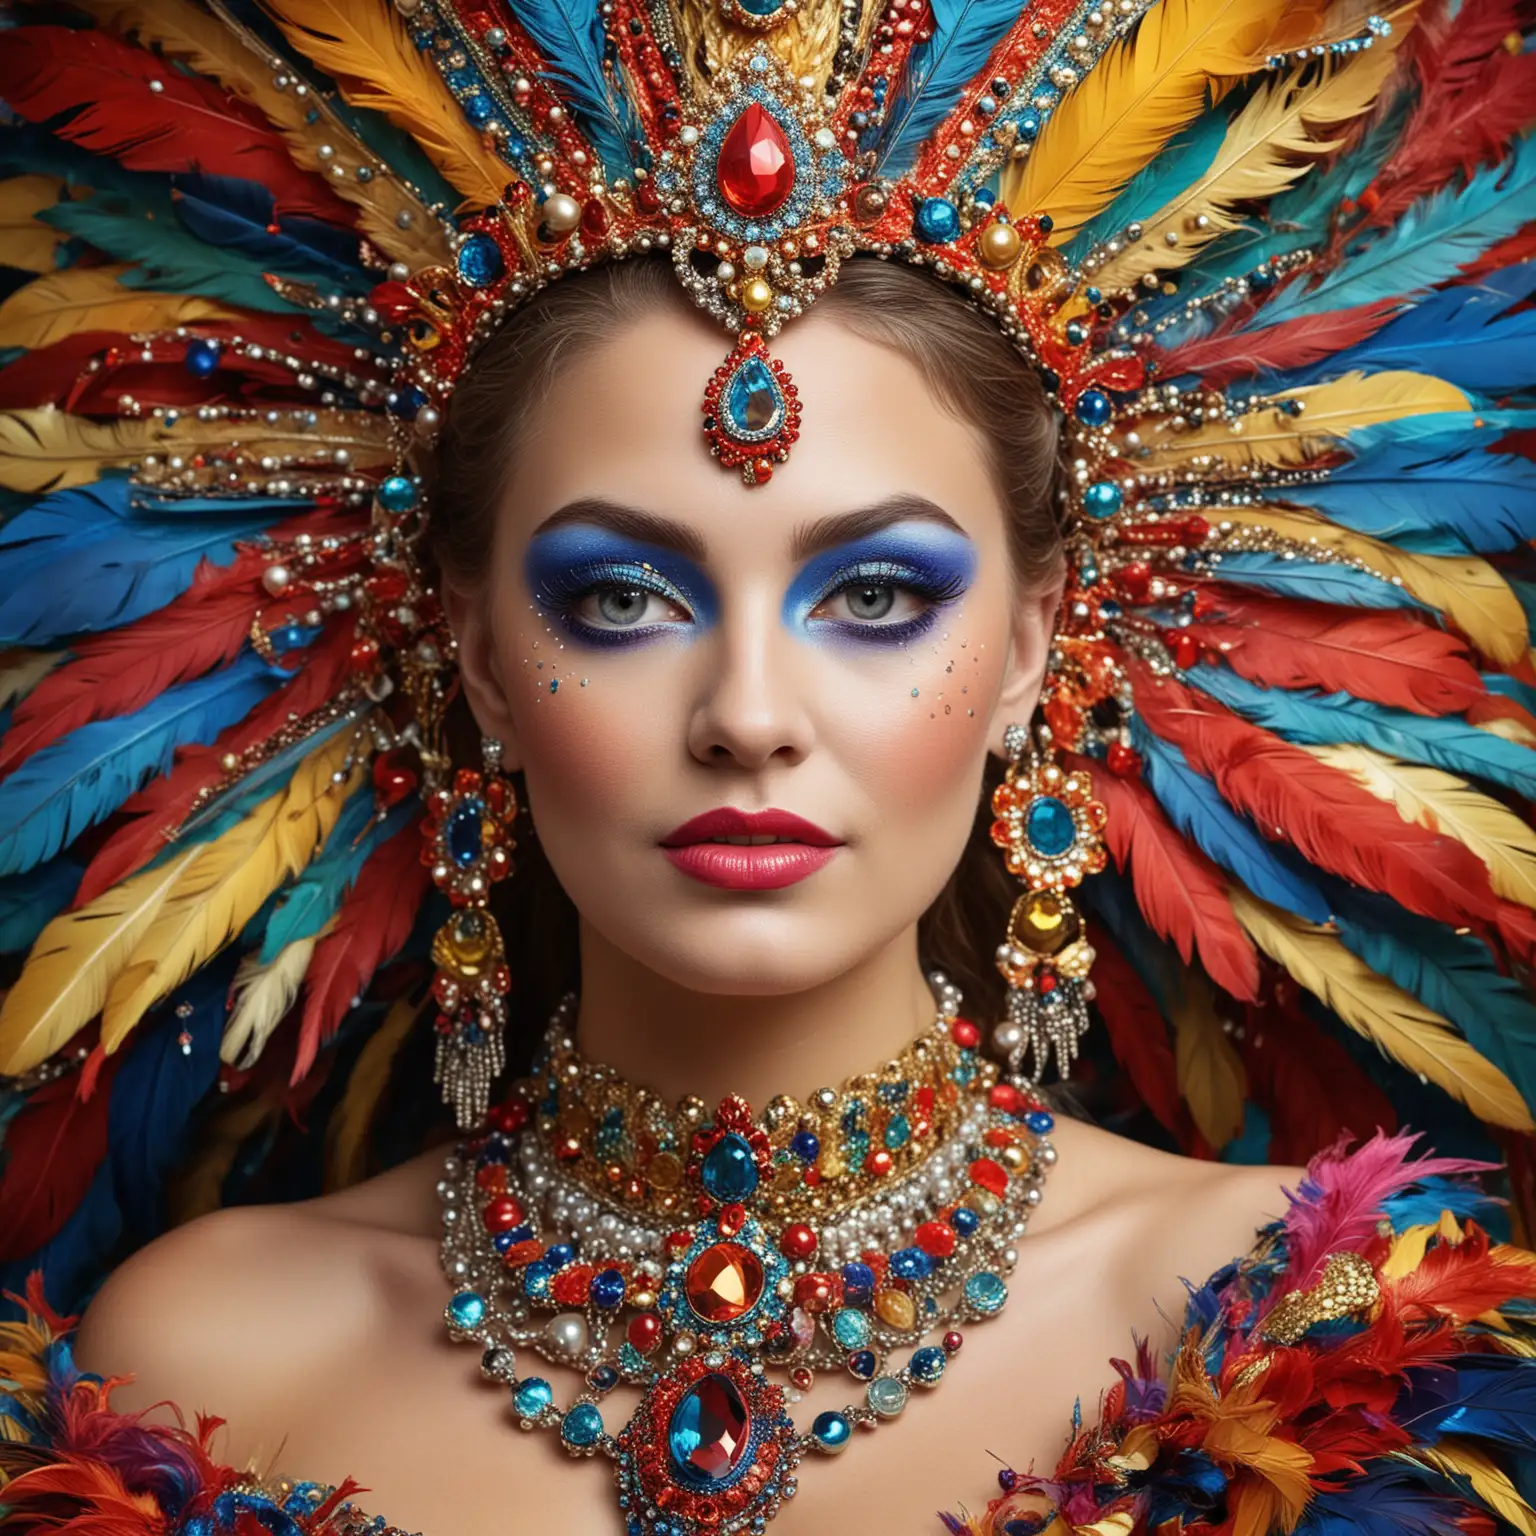 Portrait Gesicht : Karneval-Königin: Ein Bild einer Frau mit buntem, aufwendigem Karneval-Make-up, das an die lebendigen Farben und Muster eines Karnevalskostüms erinnert. Sie trägt extravaganten, festlichen Schmuck mit Federn, Glitzer und Perlen, der ihre ausgelassene Feierstimmung betont.